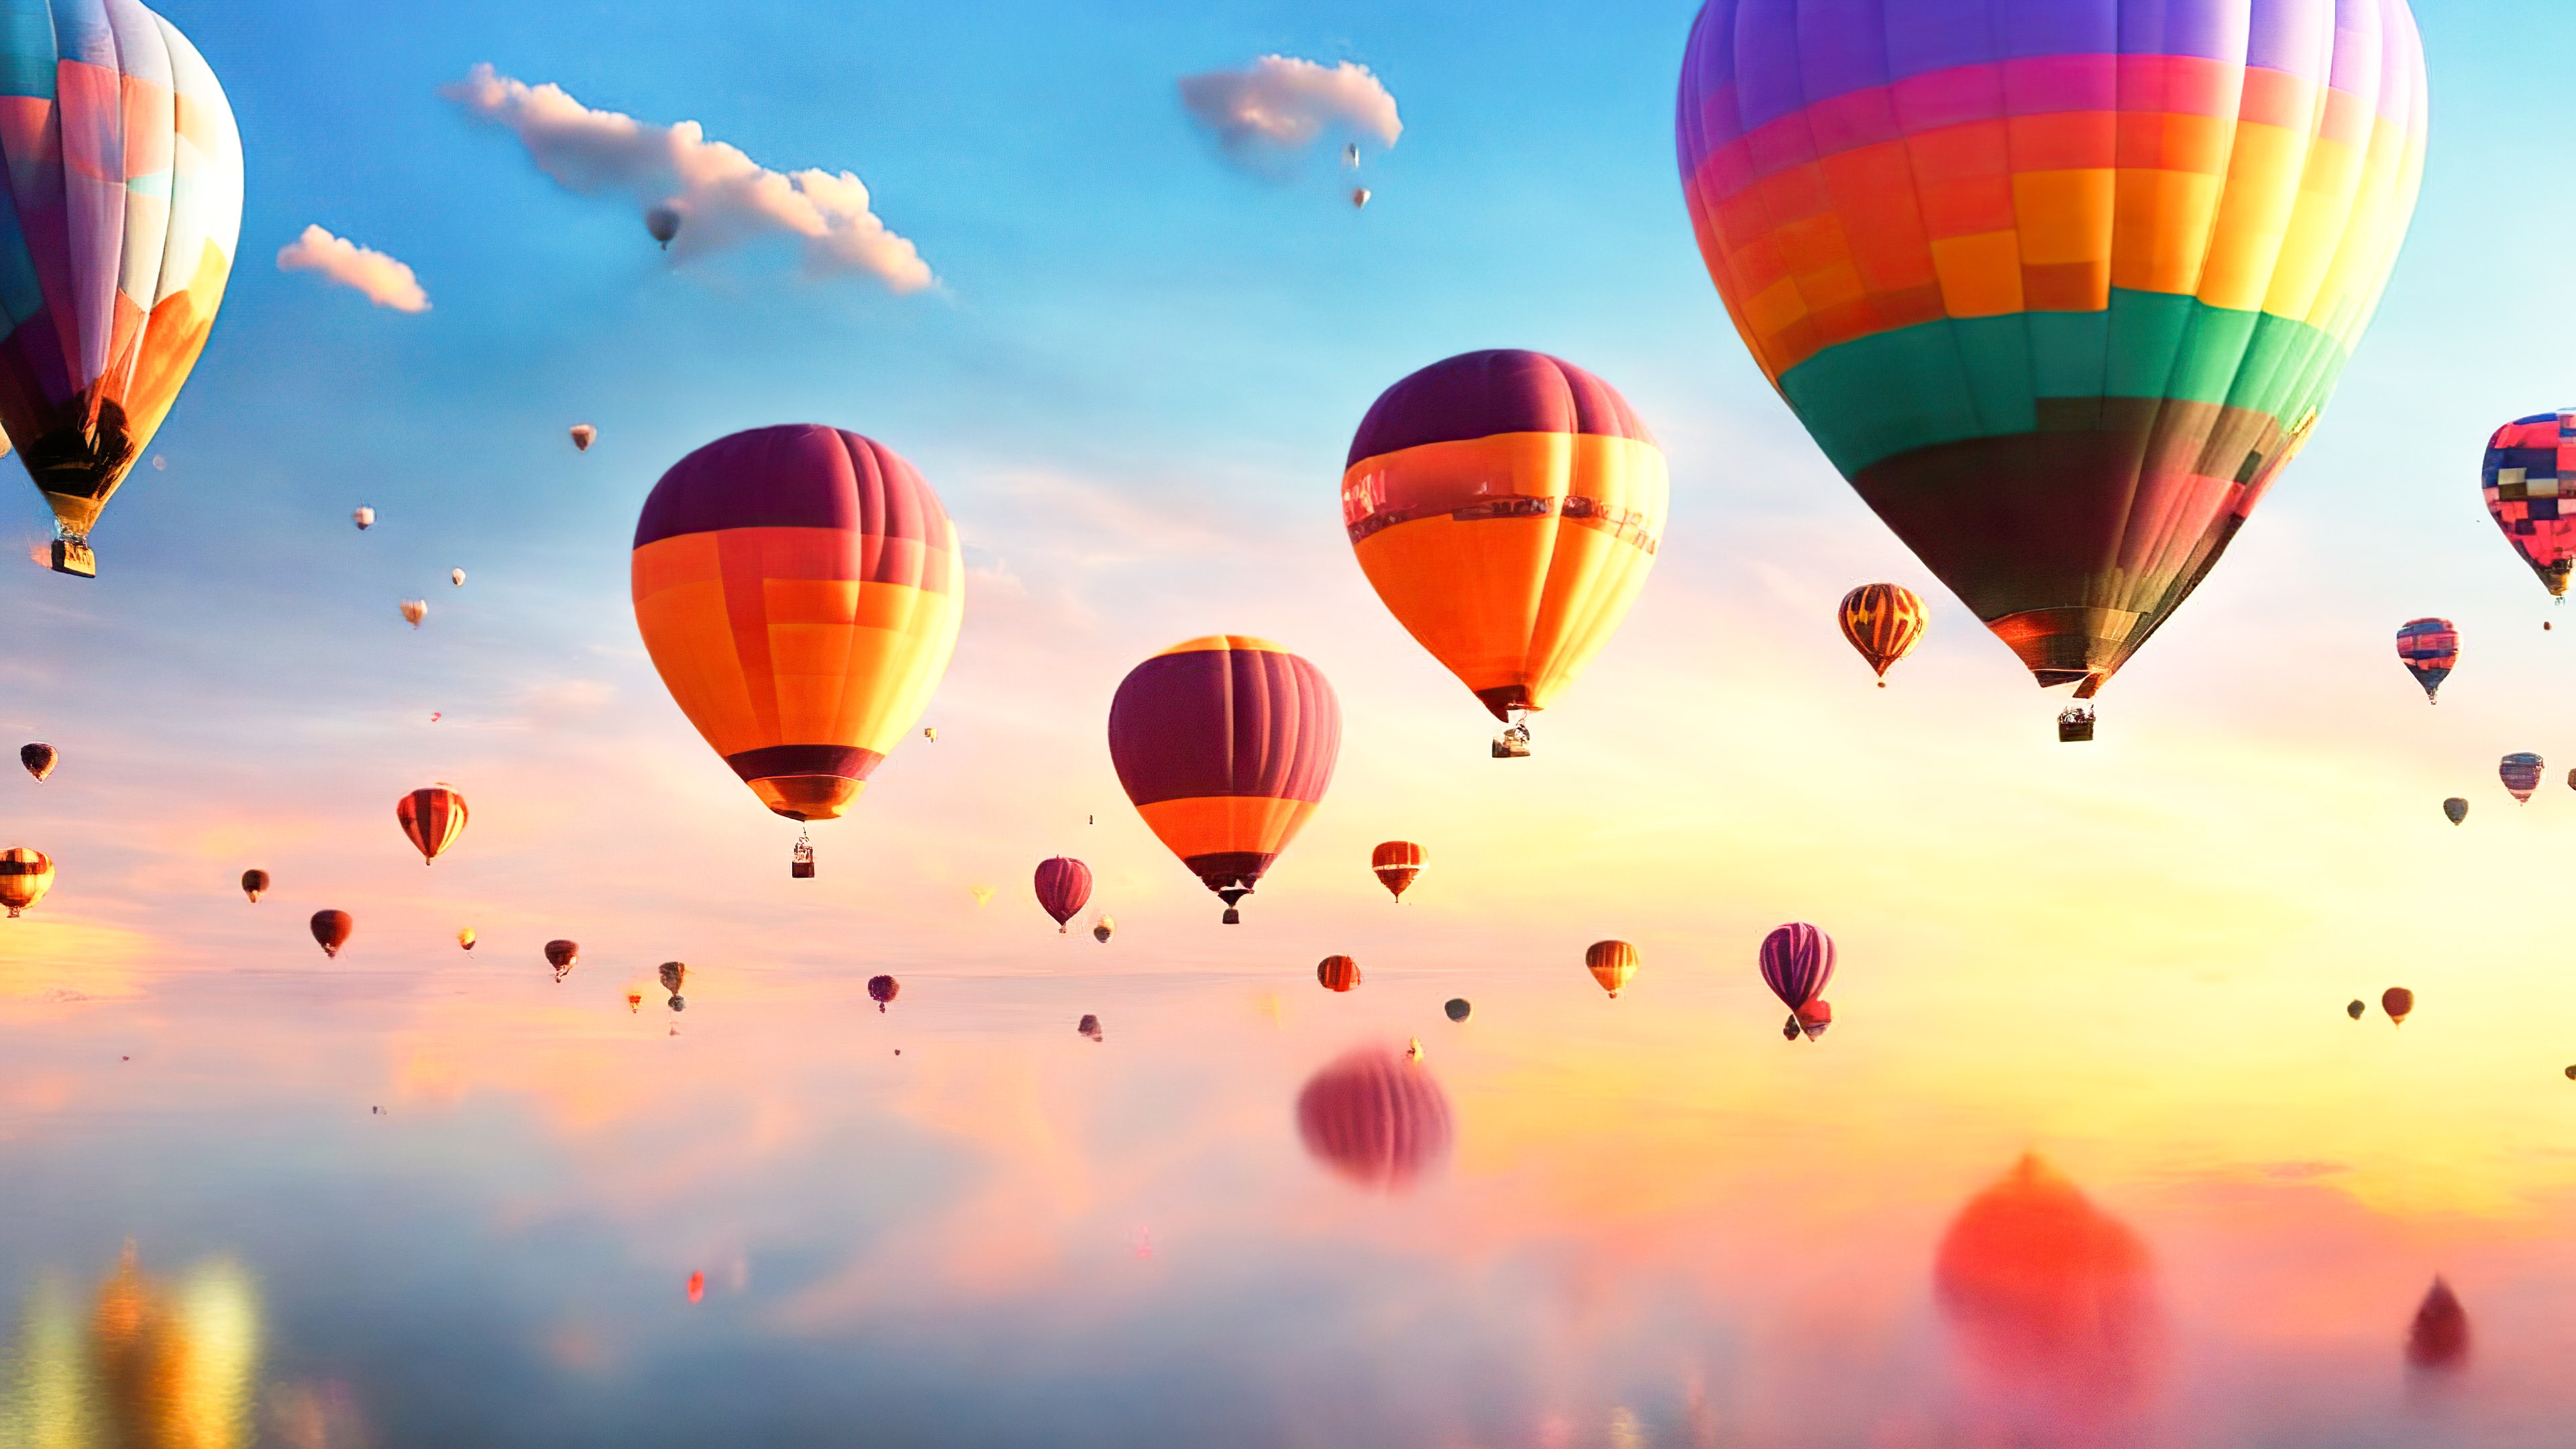 Ornez votre écran avec un ciel fantaisiste et rêveur rempli de montgolfières colorées flottantes au lever du soleil avec notre fond d'écran nature en ultra HD.